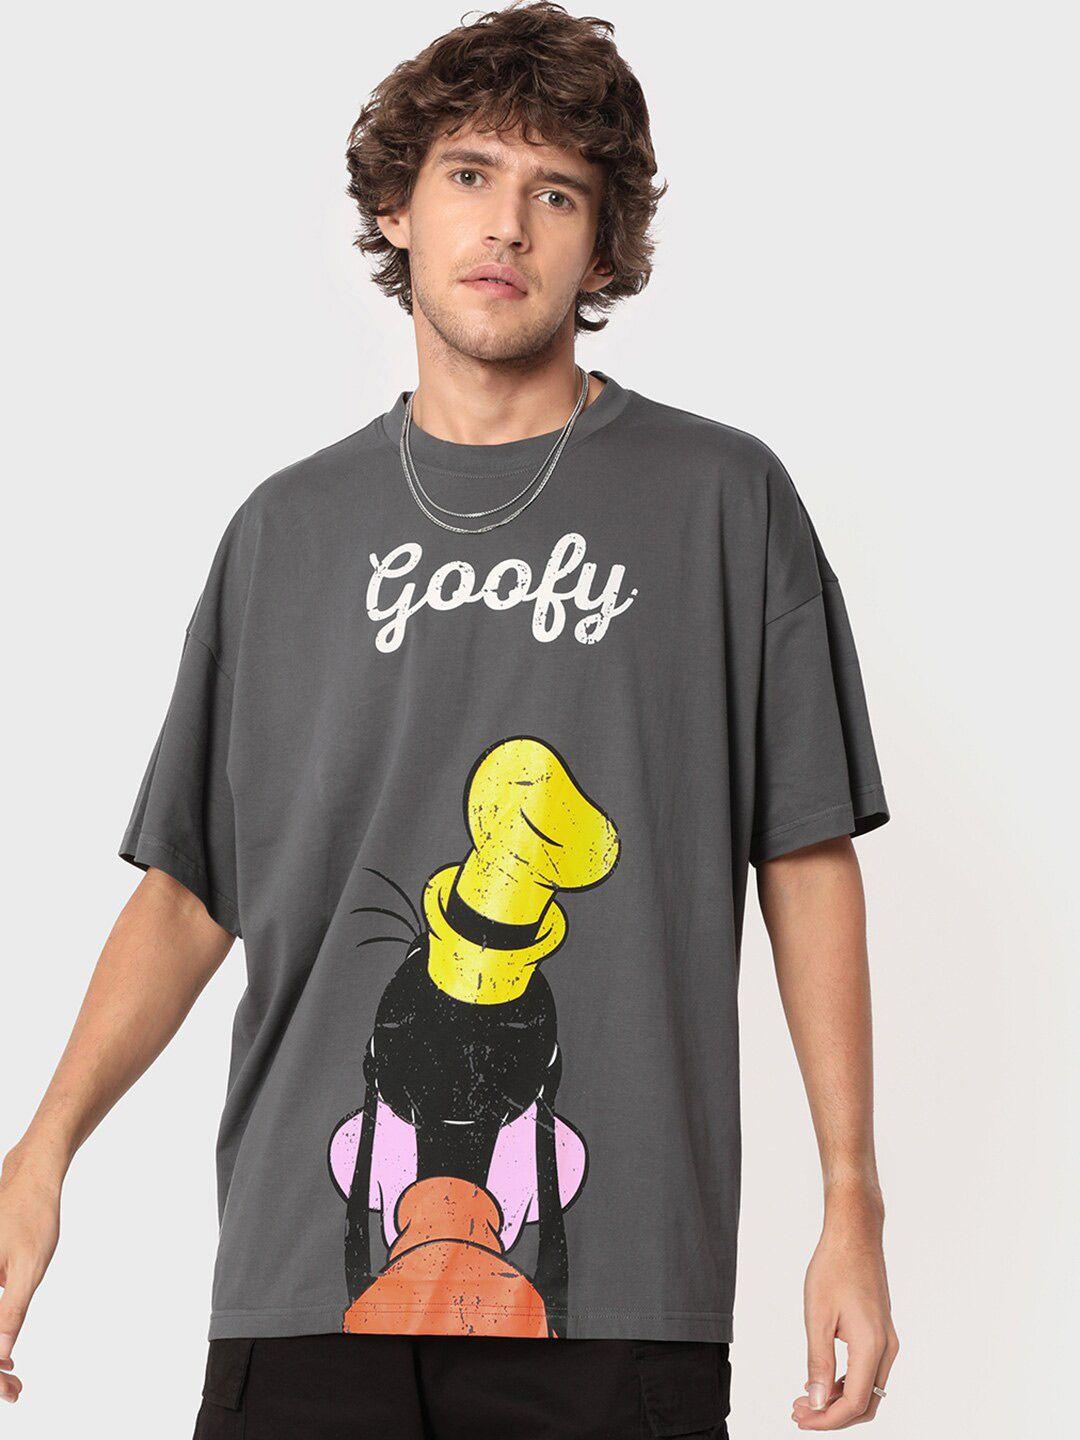 bewakoof unisex grey & yellow goofy printed pure cotton t-shirt